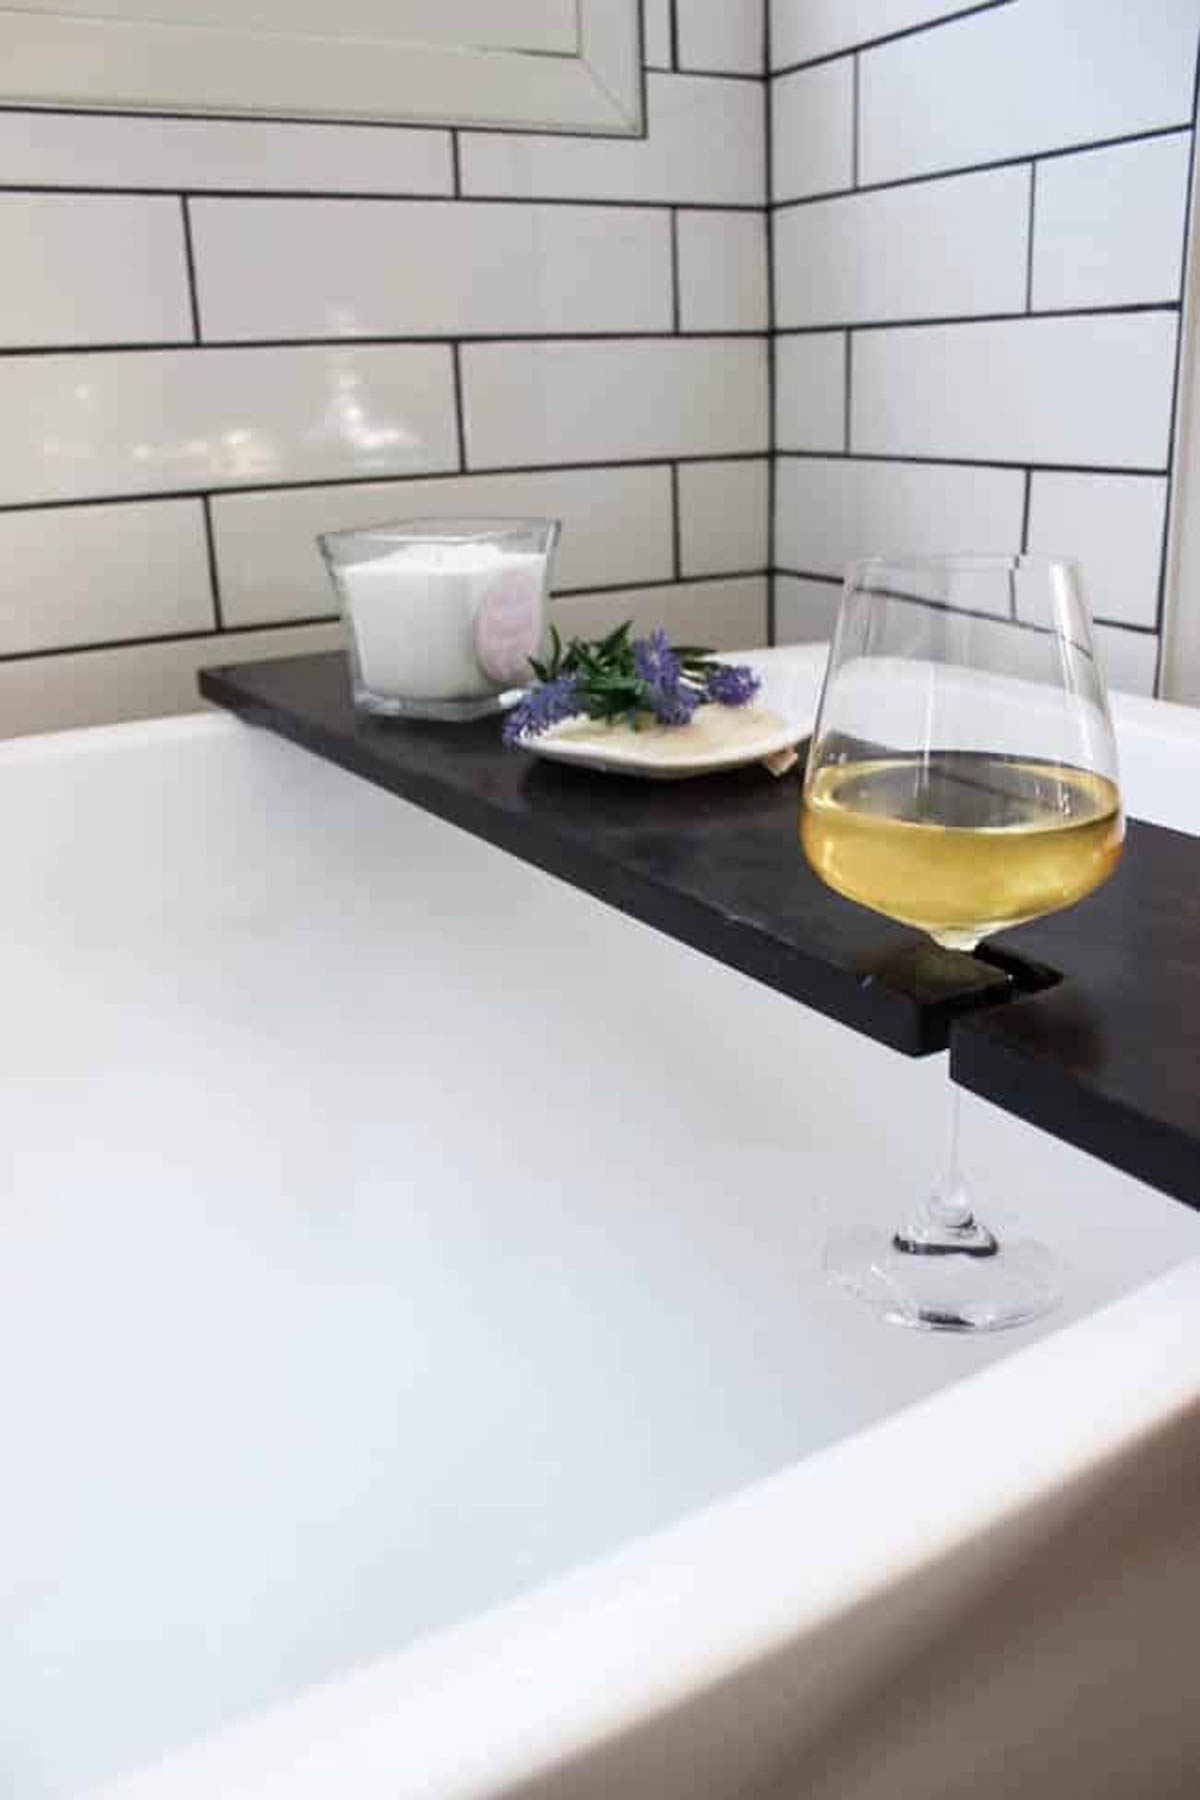 Finished DIY bath tray with wine glass holder on a bath tub